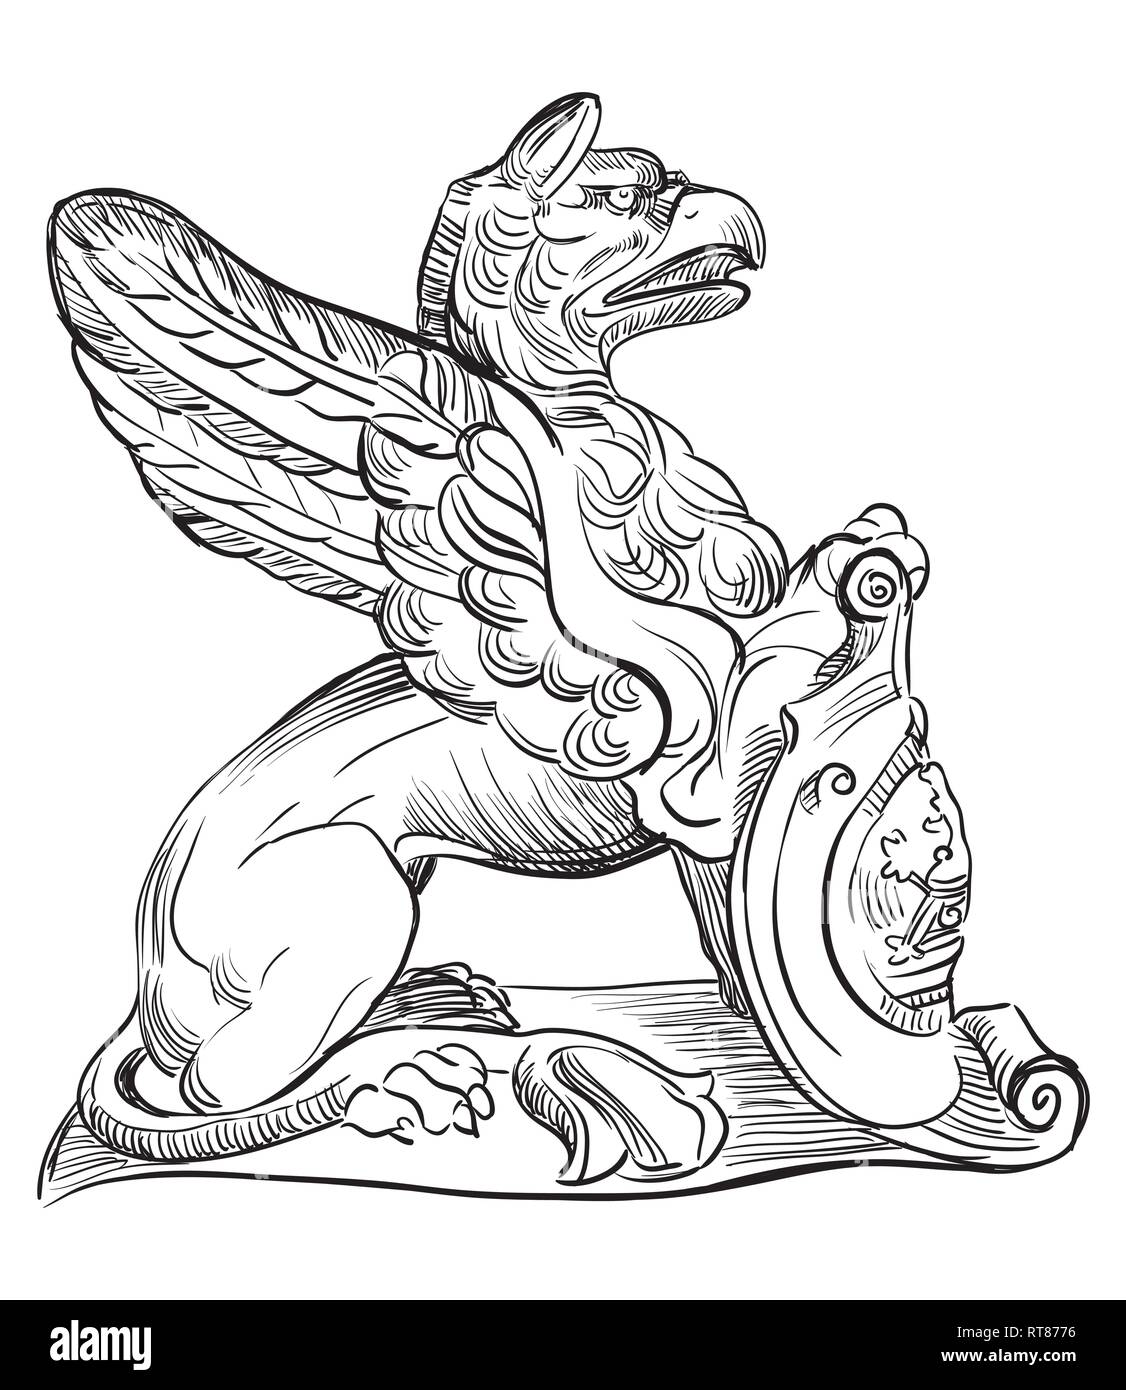 La escultura de piedra antigua de Griffin, sentado en el perfil. Dibujo a mano ilustración vectorial en color negro aislado sobre fondo blanco. Ilustración del Vector